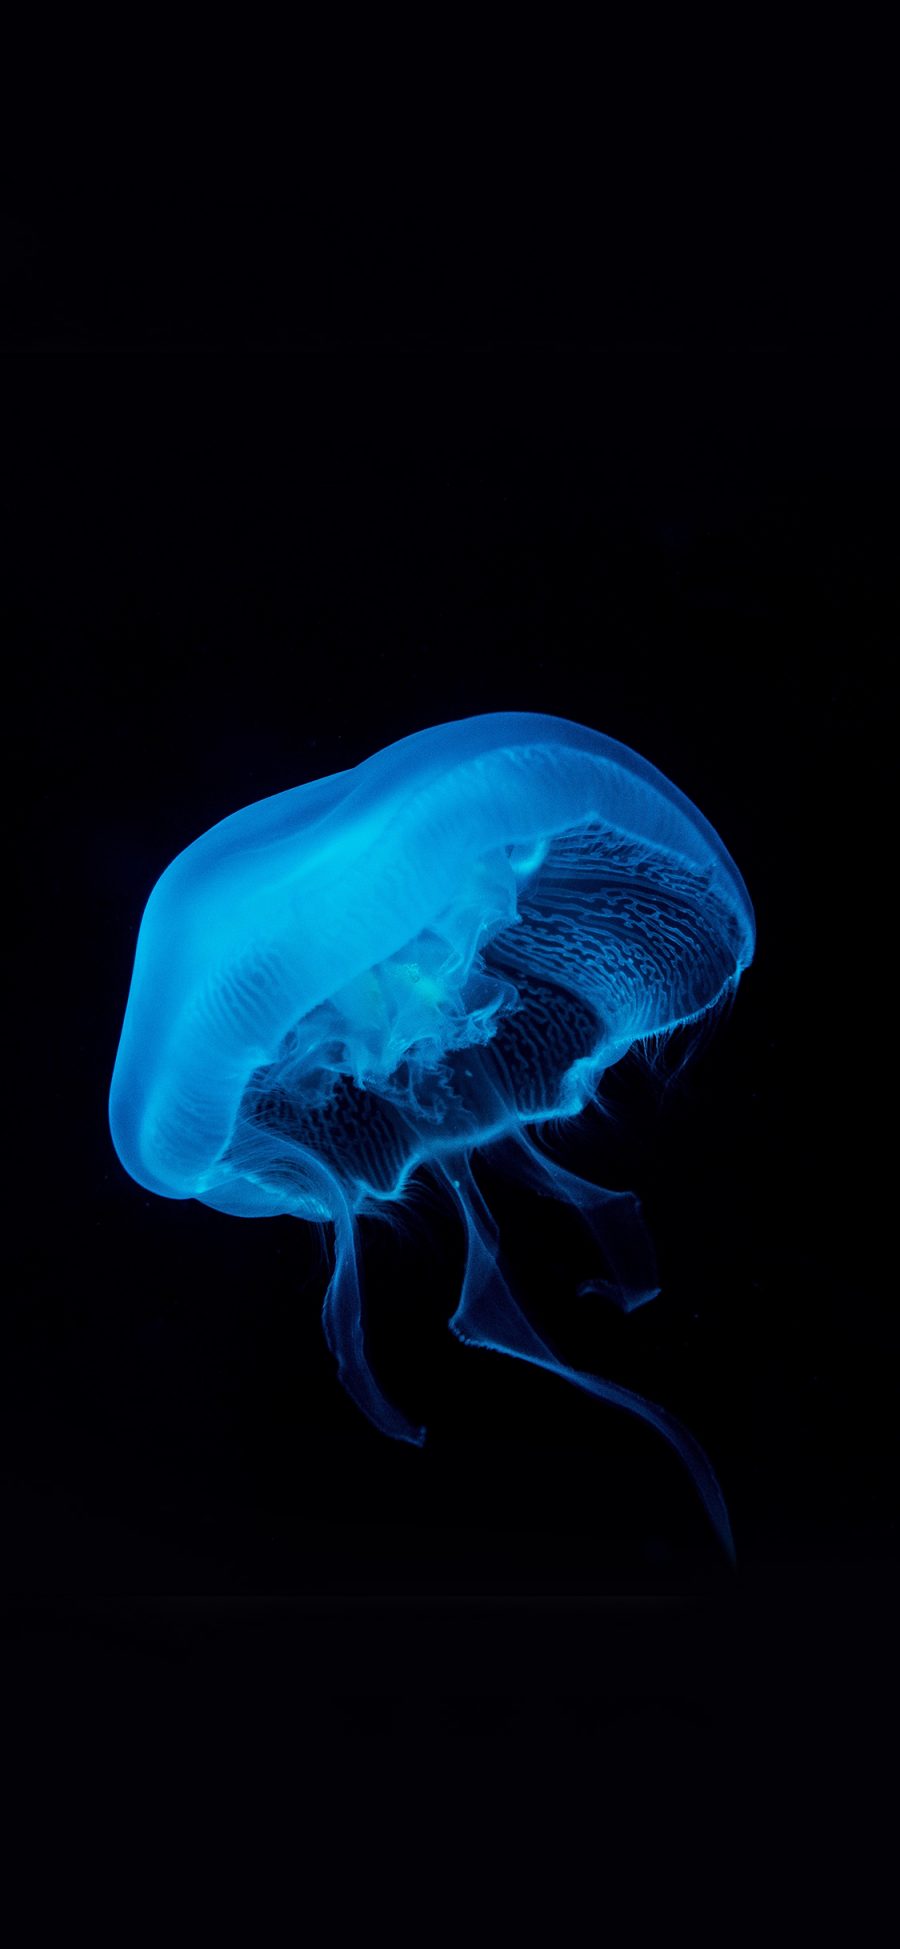 [2436×1125]水母 荧光 海洋生物 苹果手机壁纸图片